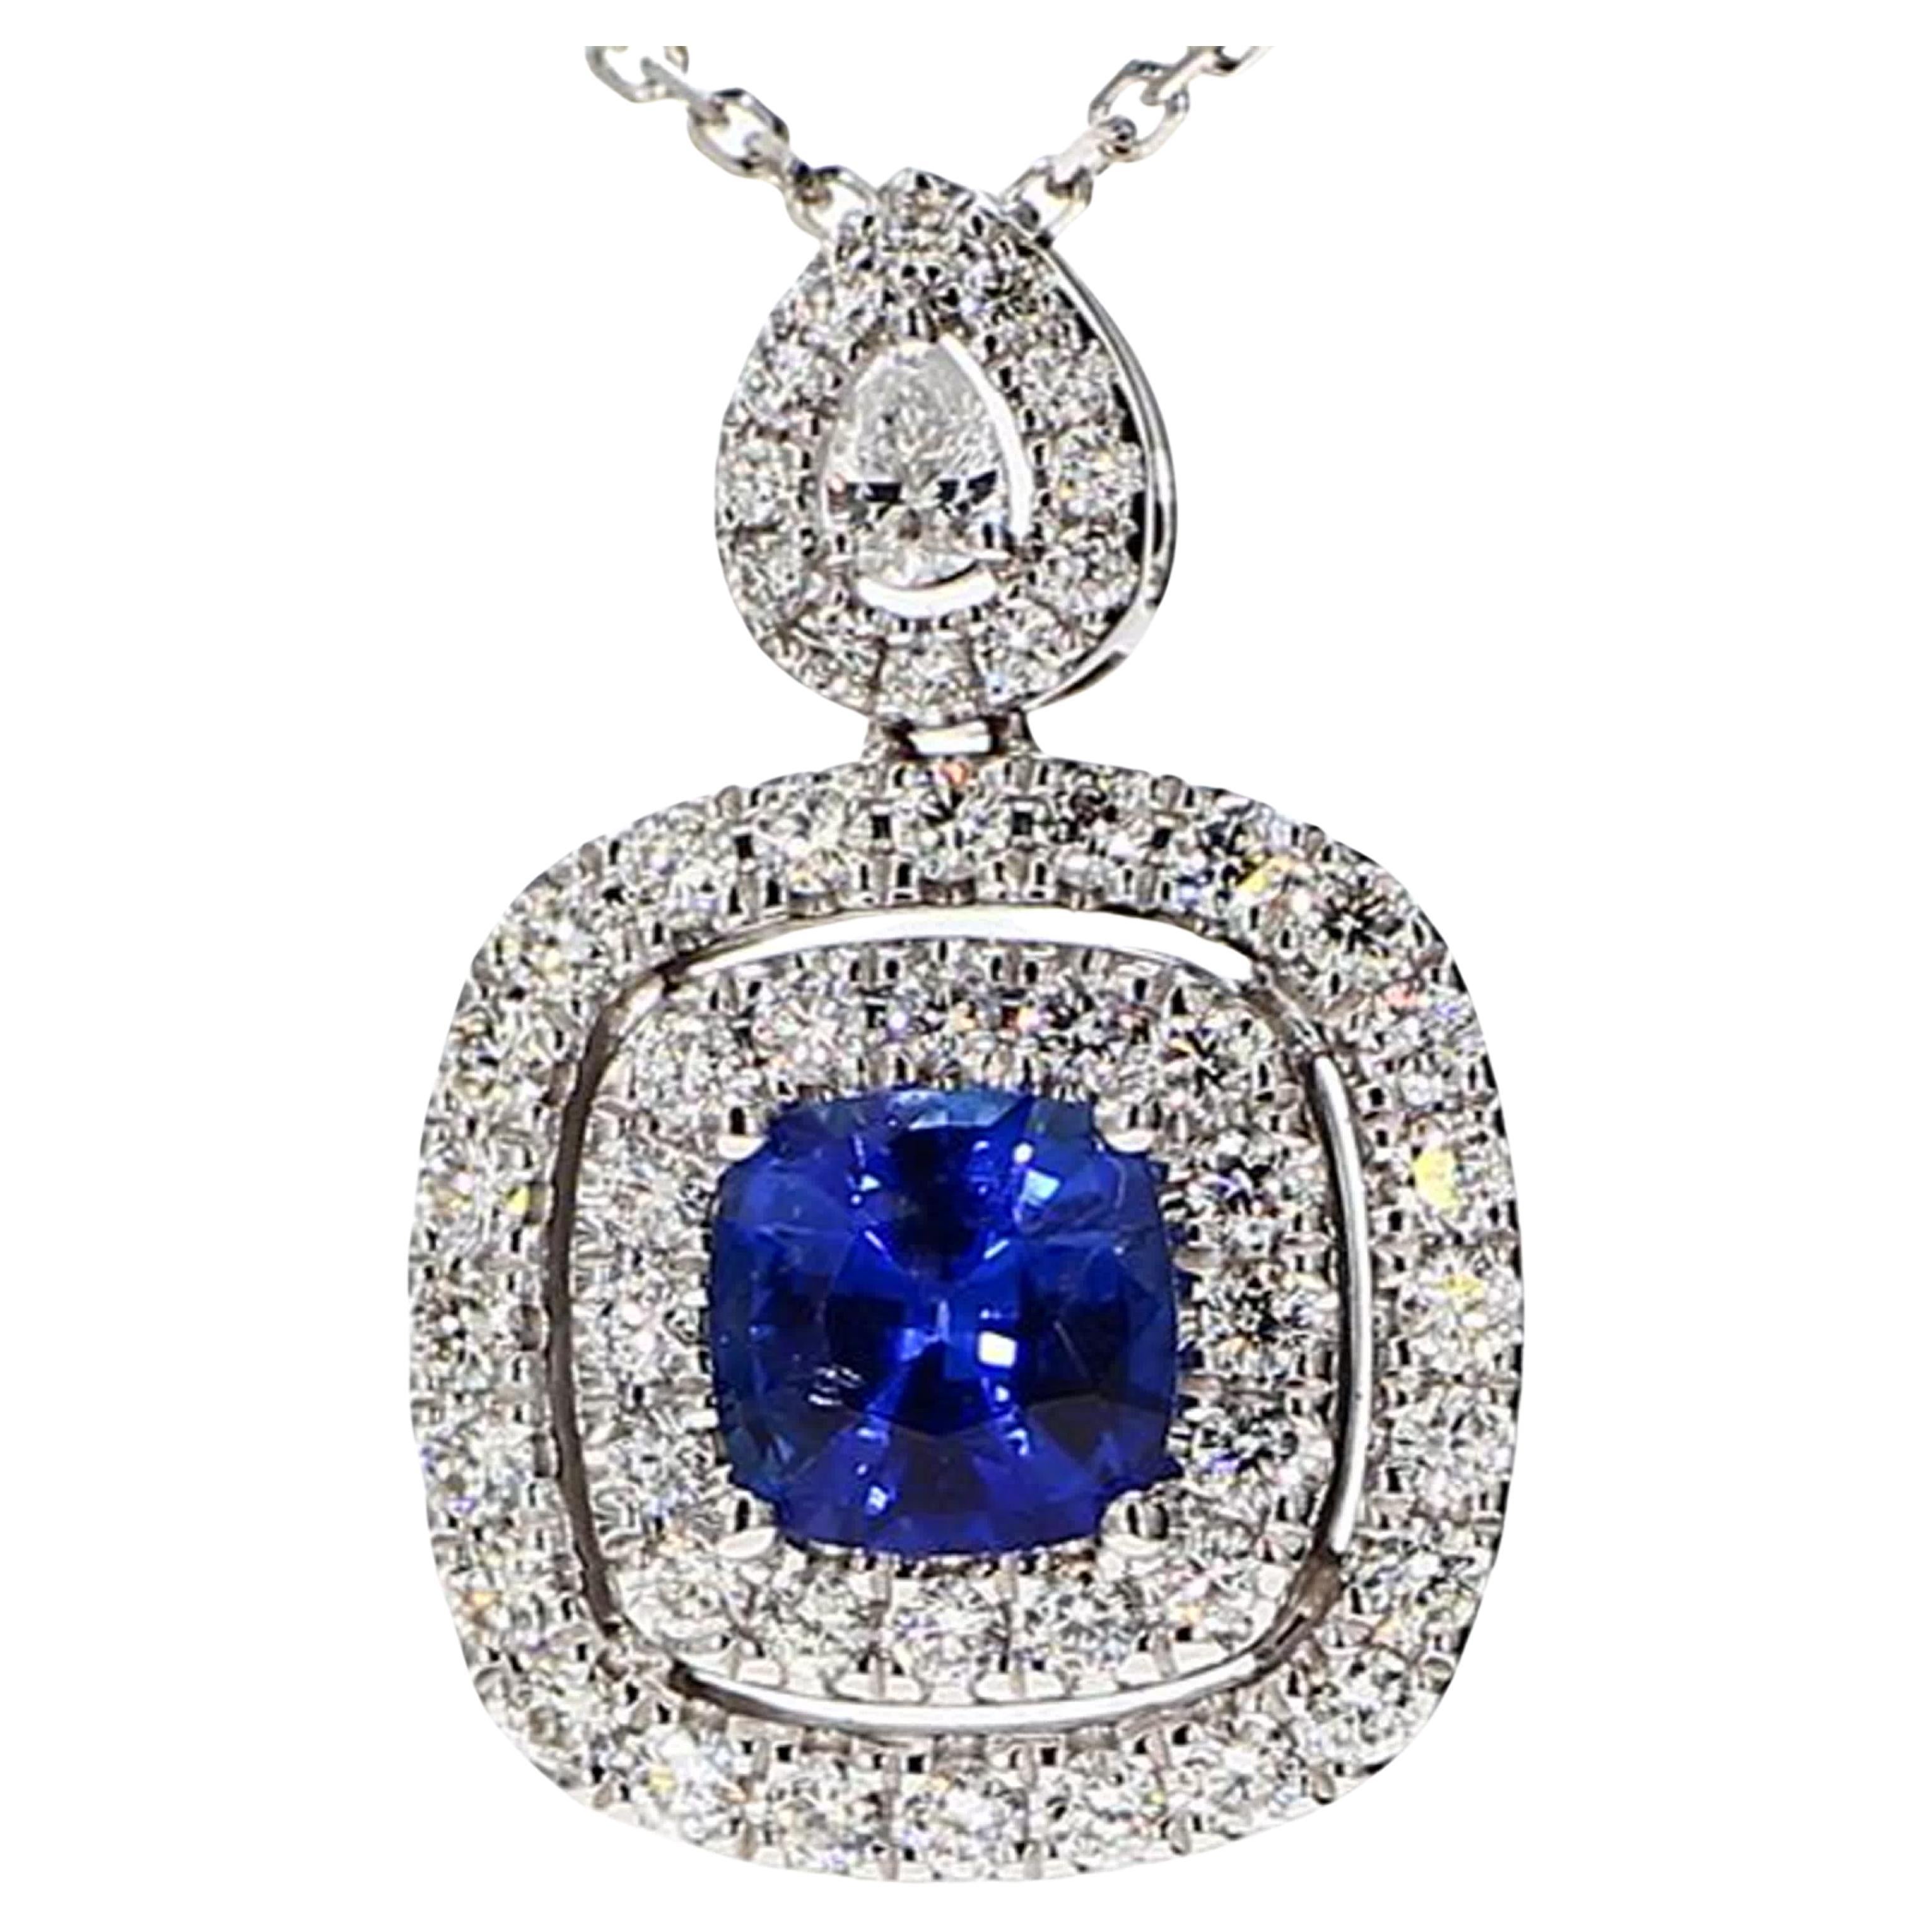 Pendentif en or blanc 1.77 carat avec saphir bleu naturel taille coussin et diamants blancs